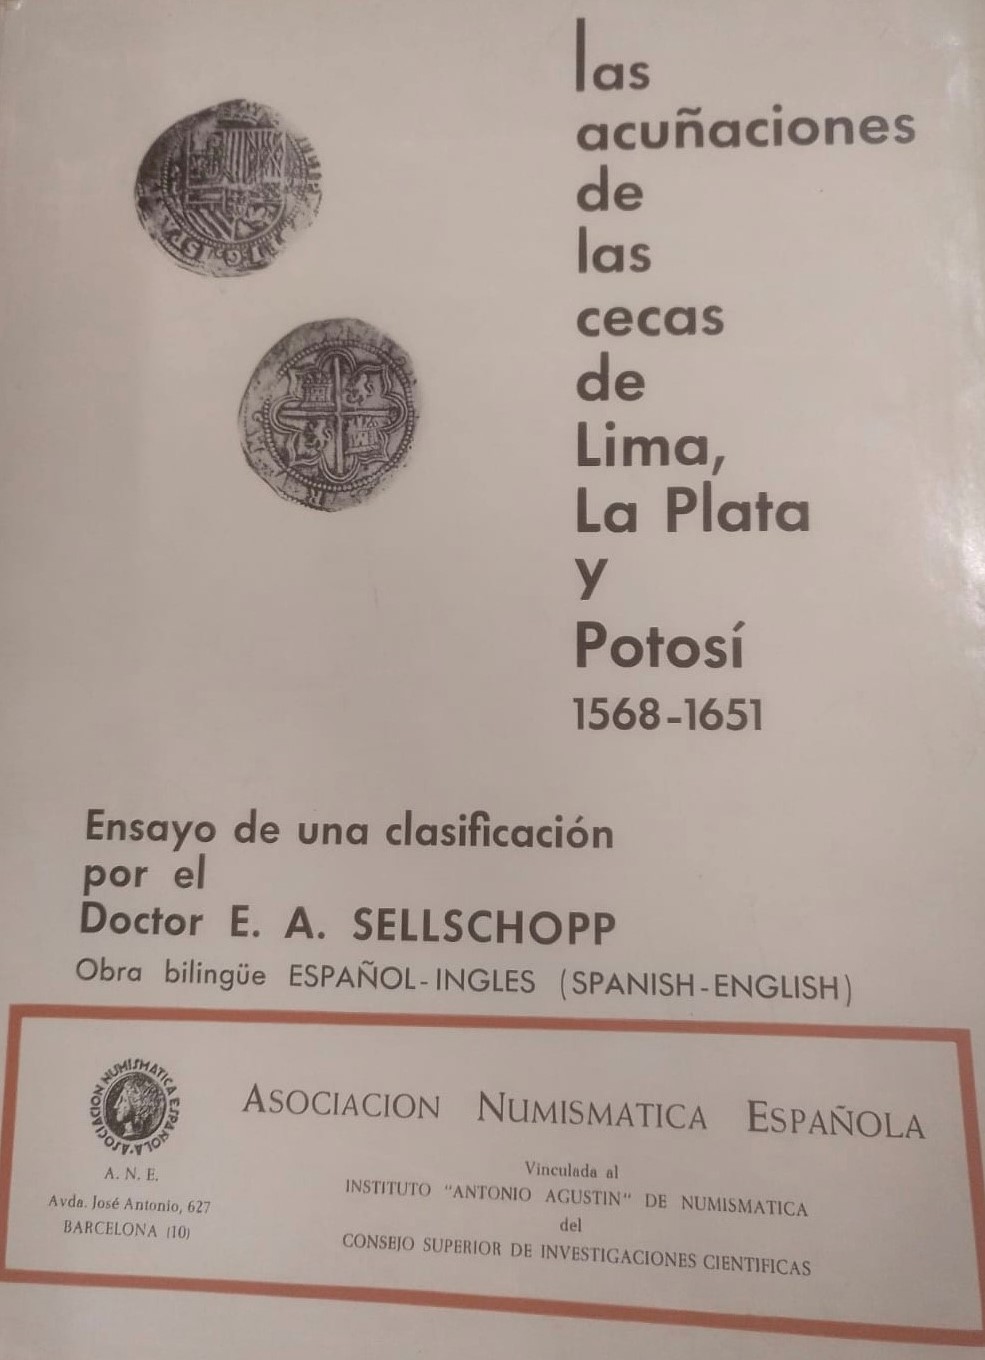 Las Acuñaciones de las Cecas de Lima, La Plata y Potosí (1568-1651). Ensayo de una clasificación por el Doctor E. A. Sellschopp. A. N. E.